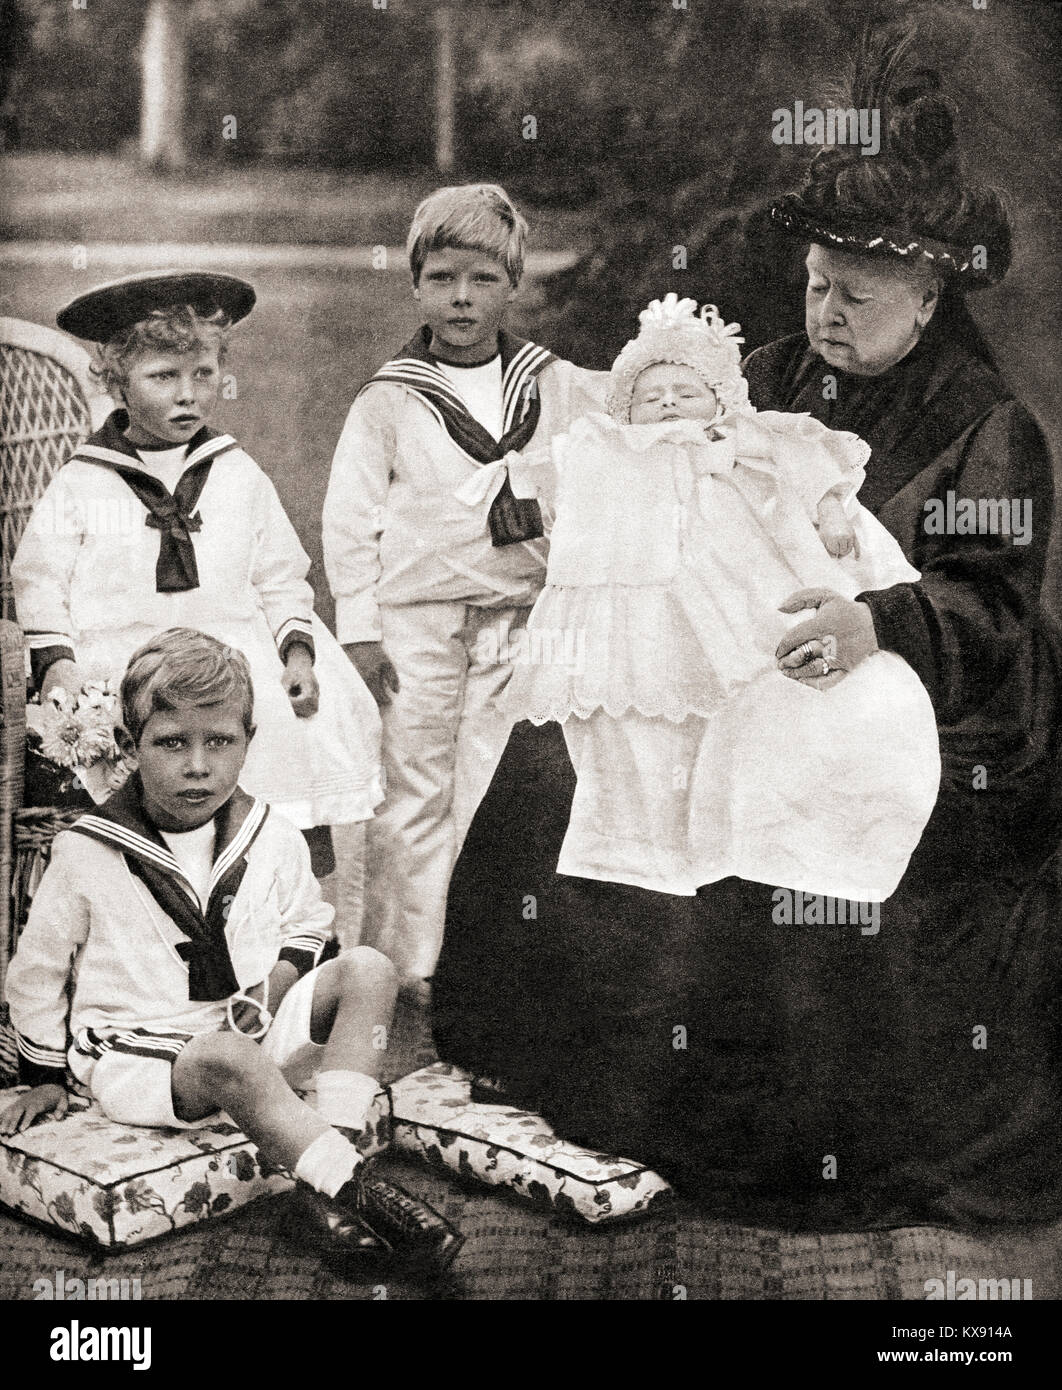 La reina Victoria y su gran grand-niños, de izquierda a derecha, el Príncipe Alberto (futuro Jorge VI), la Princesa María (Princesa Real), Prince Edward (futuro Rey Eduardo VIII) y el Príncipe Enrique (futuro Duque de Gloucester), visto aquí en 1900. Victoria, 1819 - 1901. La Reina del Reino Unido de Gran Bretaña e Irlanda. Foto de stock